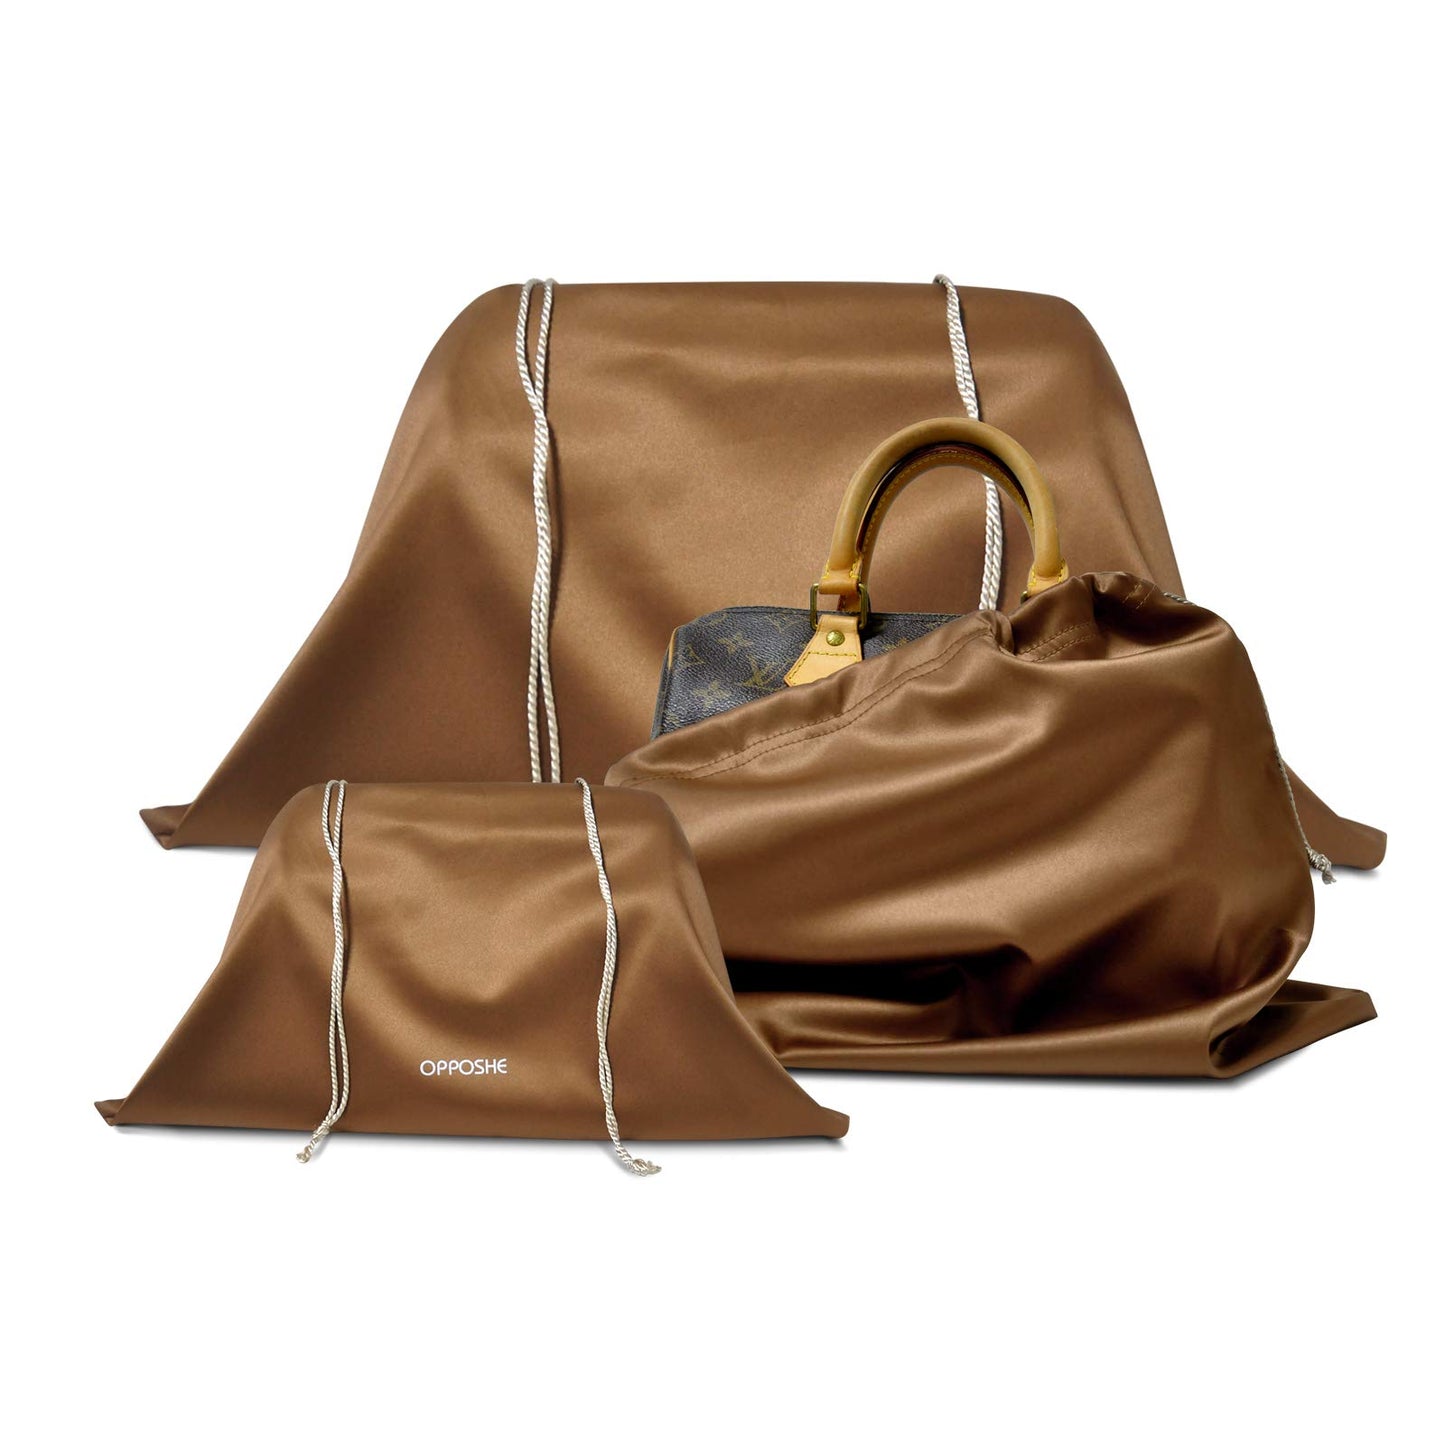 Louis Vuitton, Bags, Set Of 3 Louis Vuitton Dust Bags